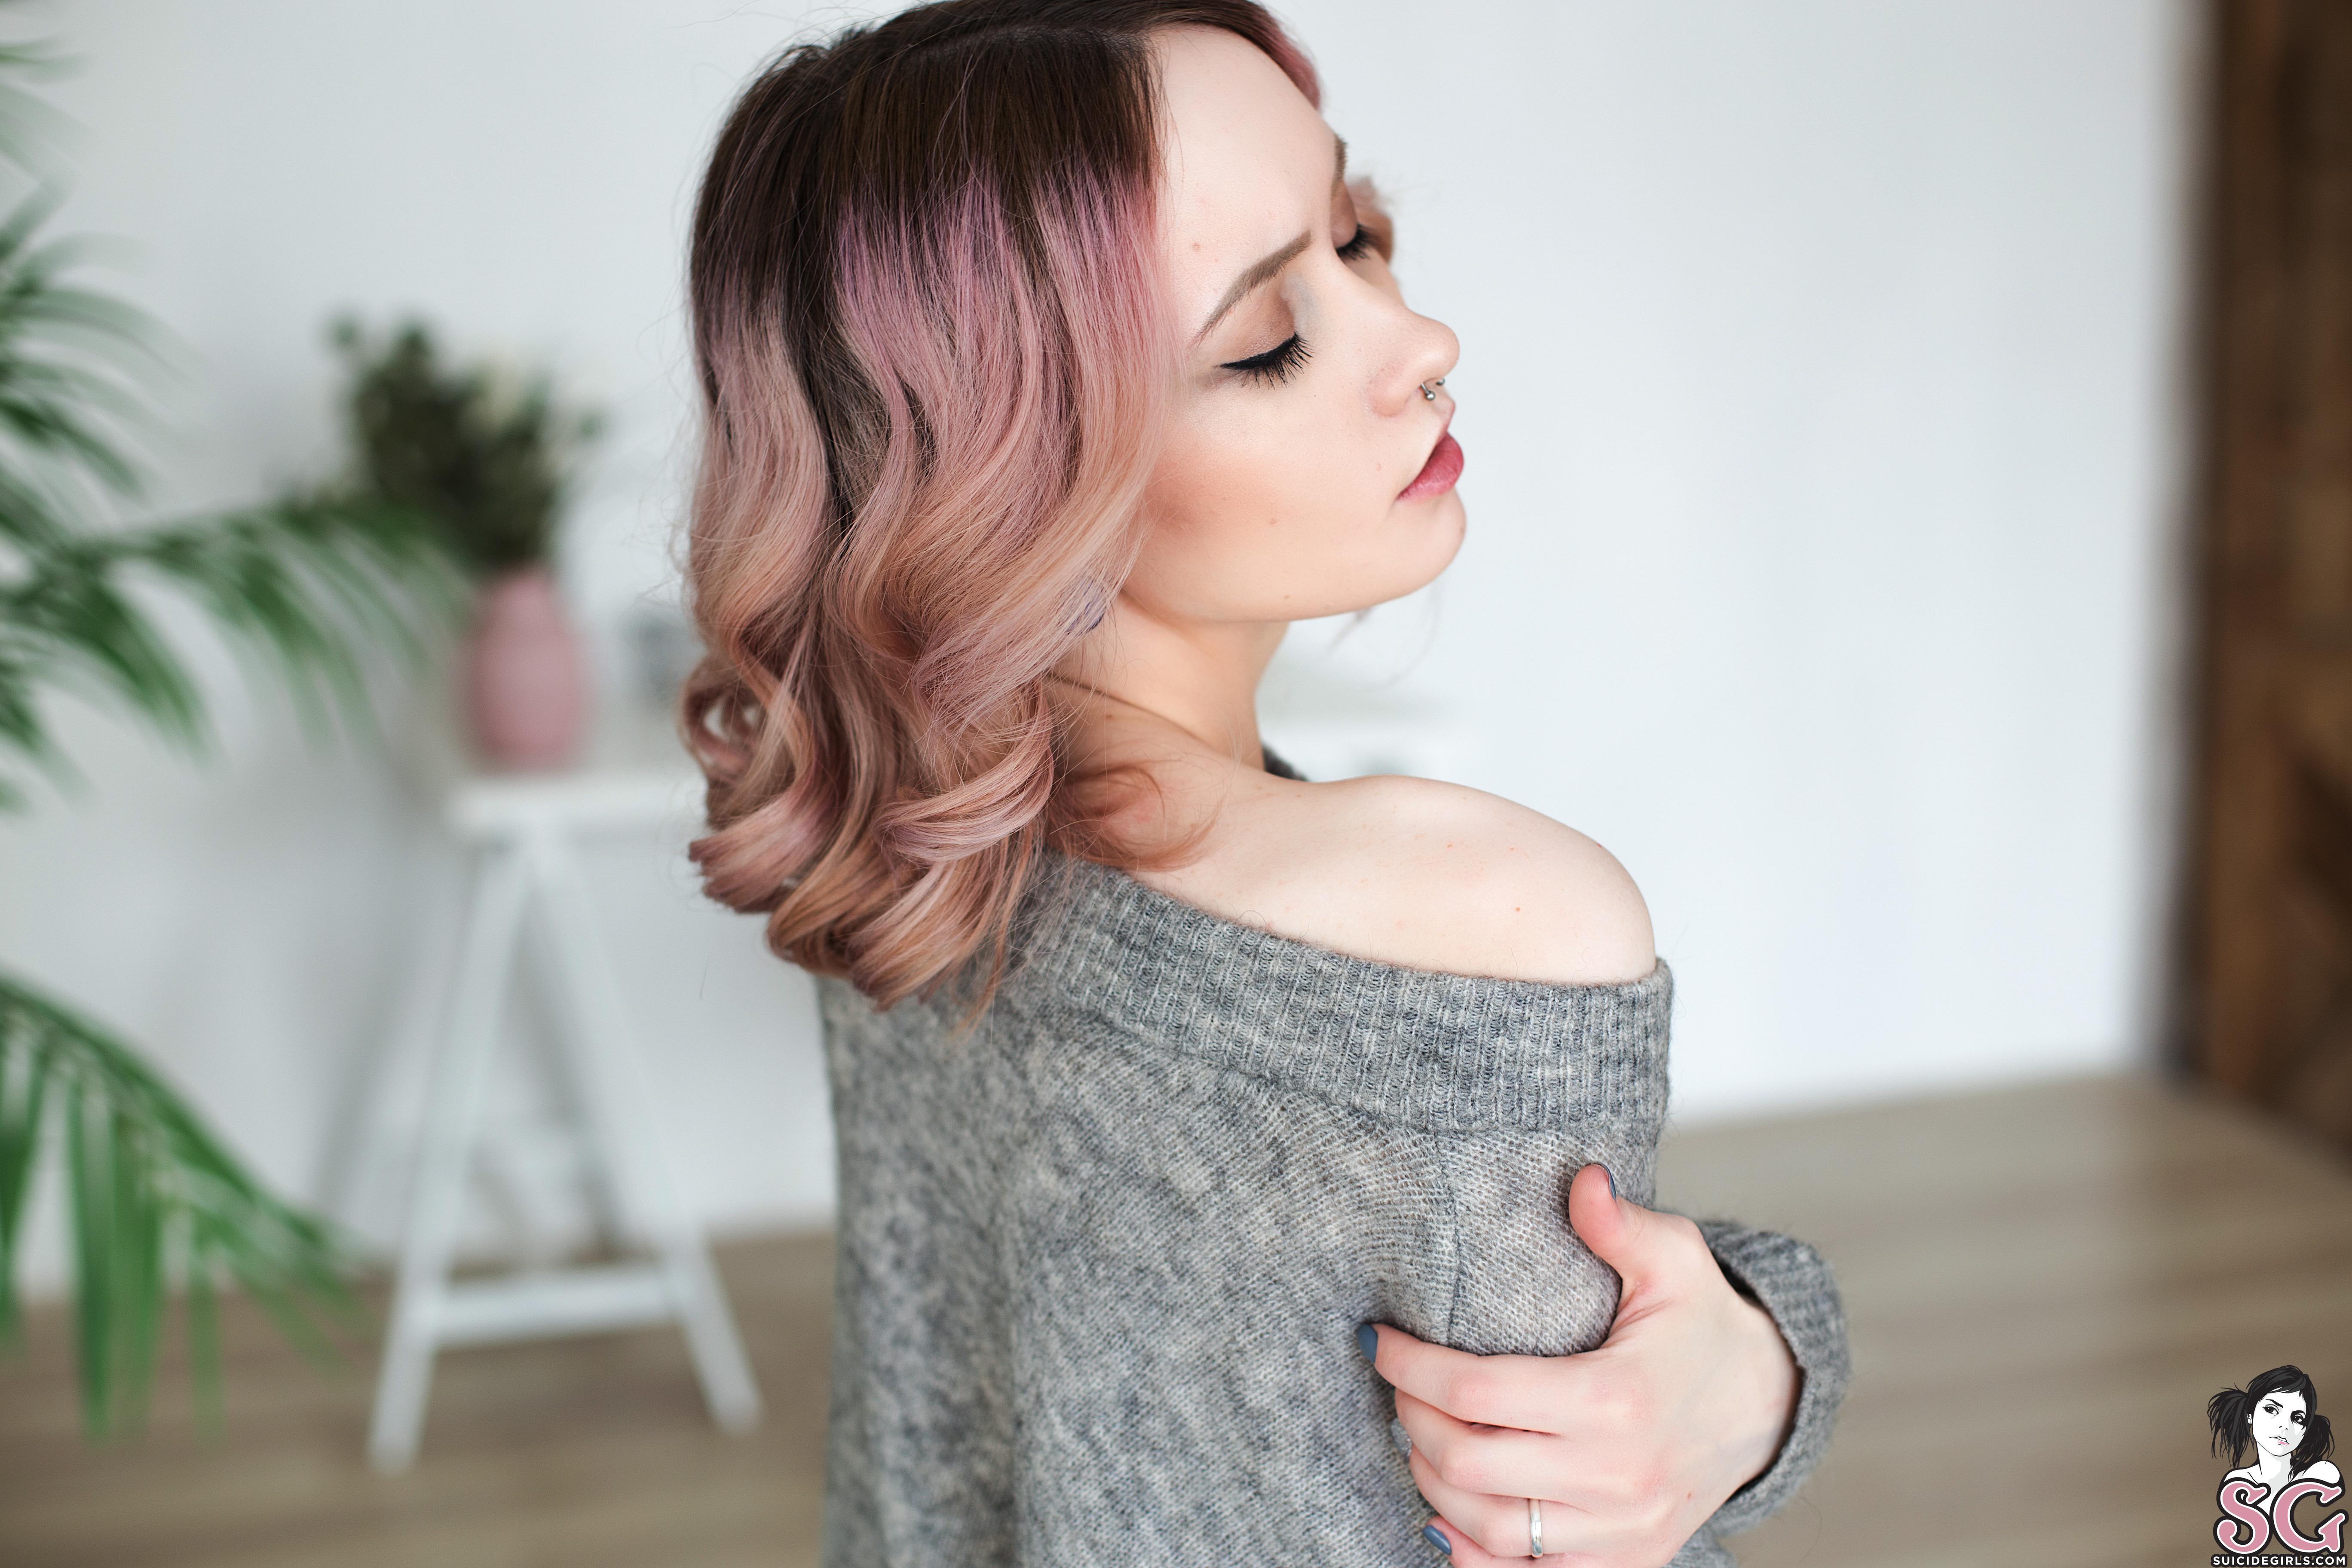 Women Model Dyed Hair Sweater Depth Of Field In Bedroom Plants Pierced Nose 5472x3648